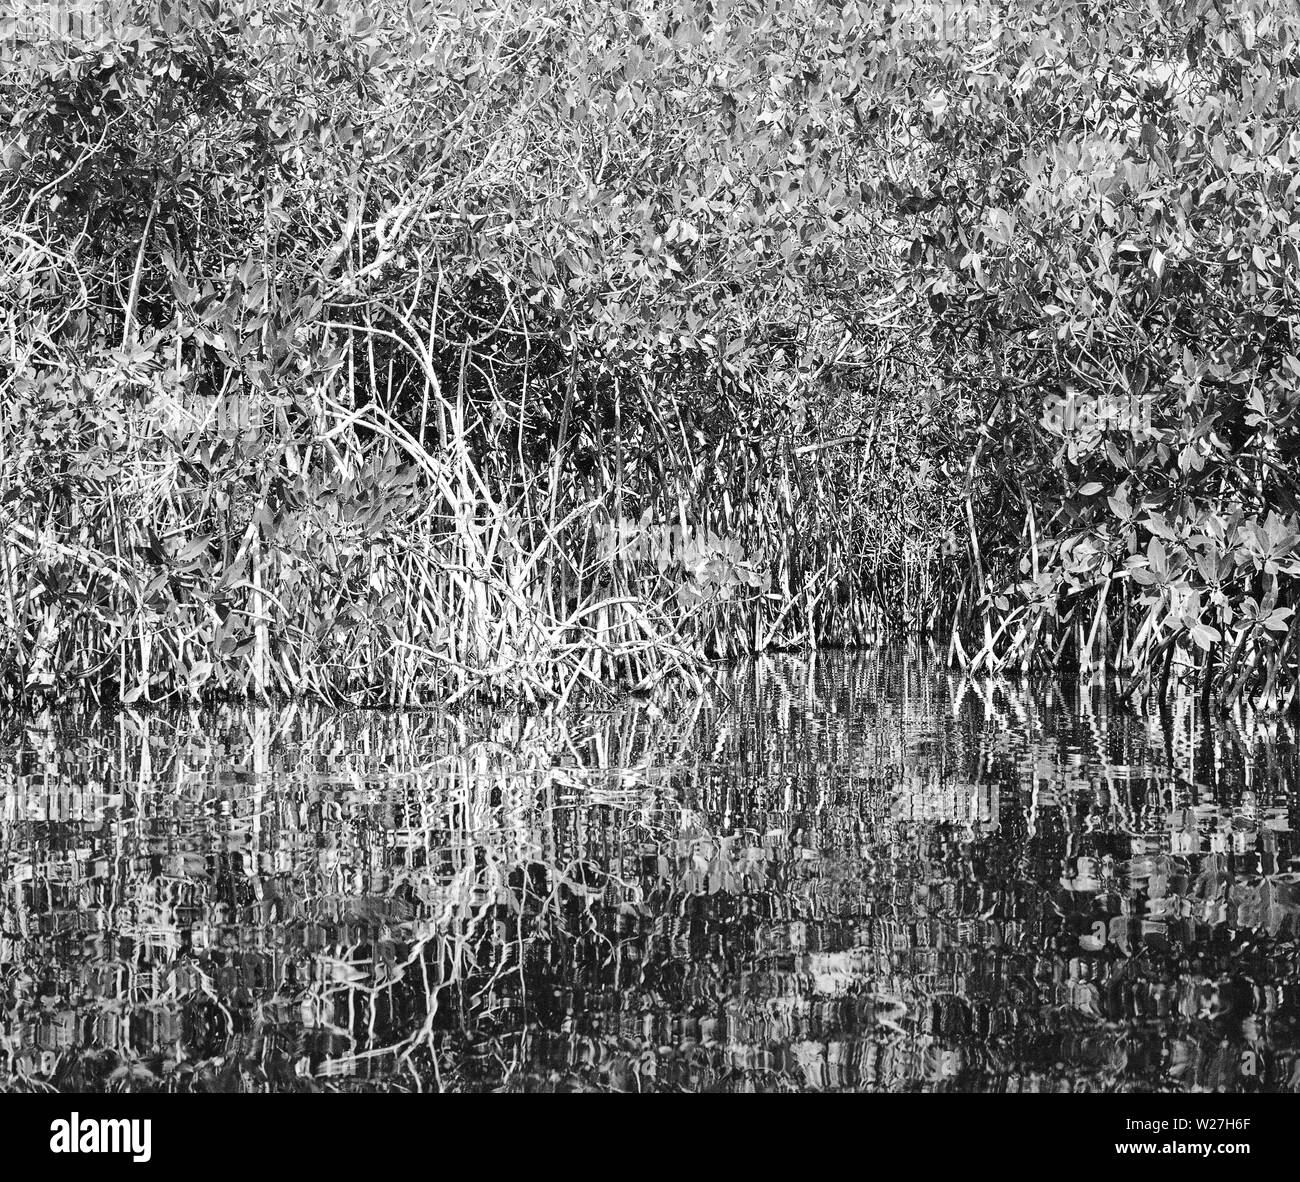 CELESTUN, YUC/MESSICO - Ott 1st, 2014: Vista della mangrovia dal fiume. B&W film. Foto Stock